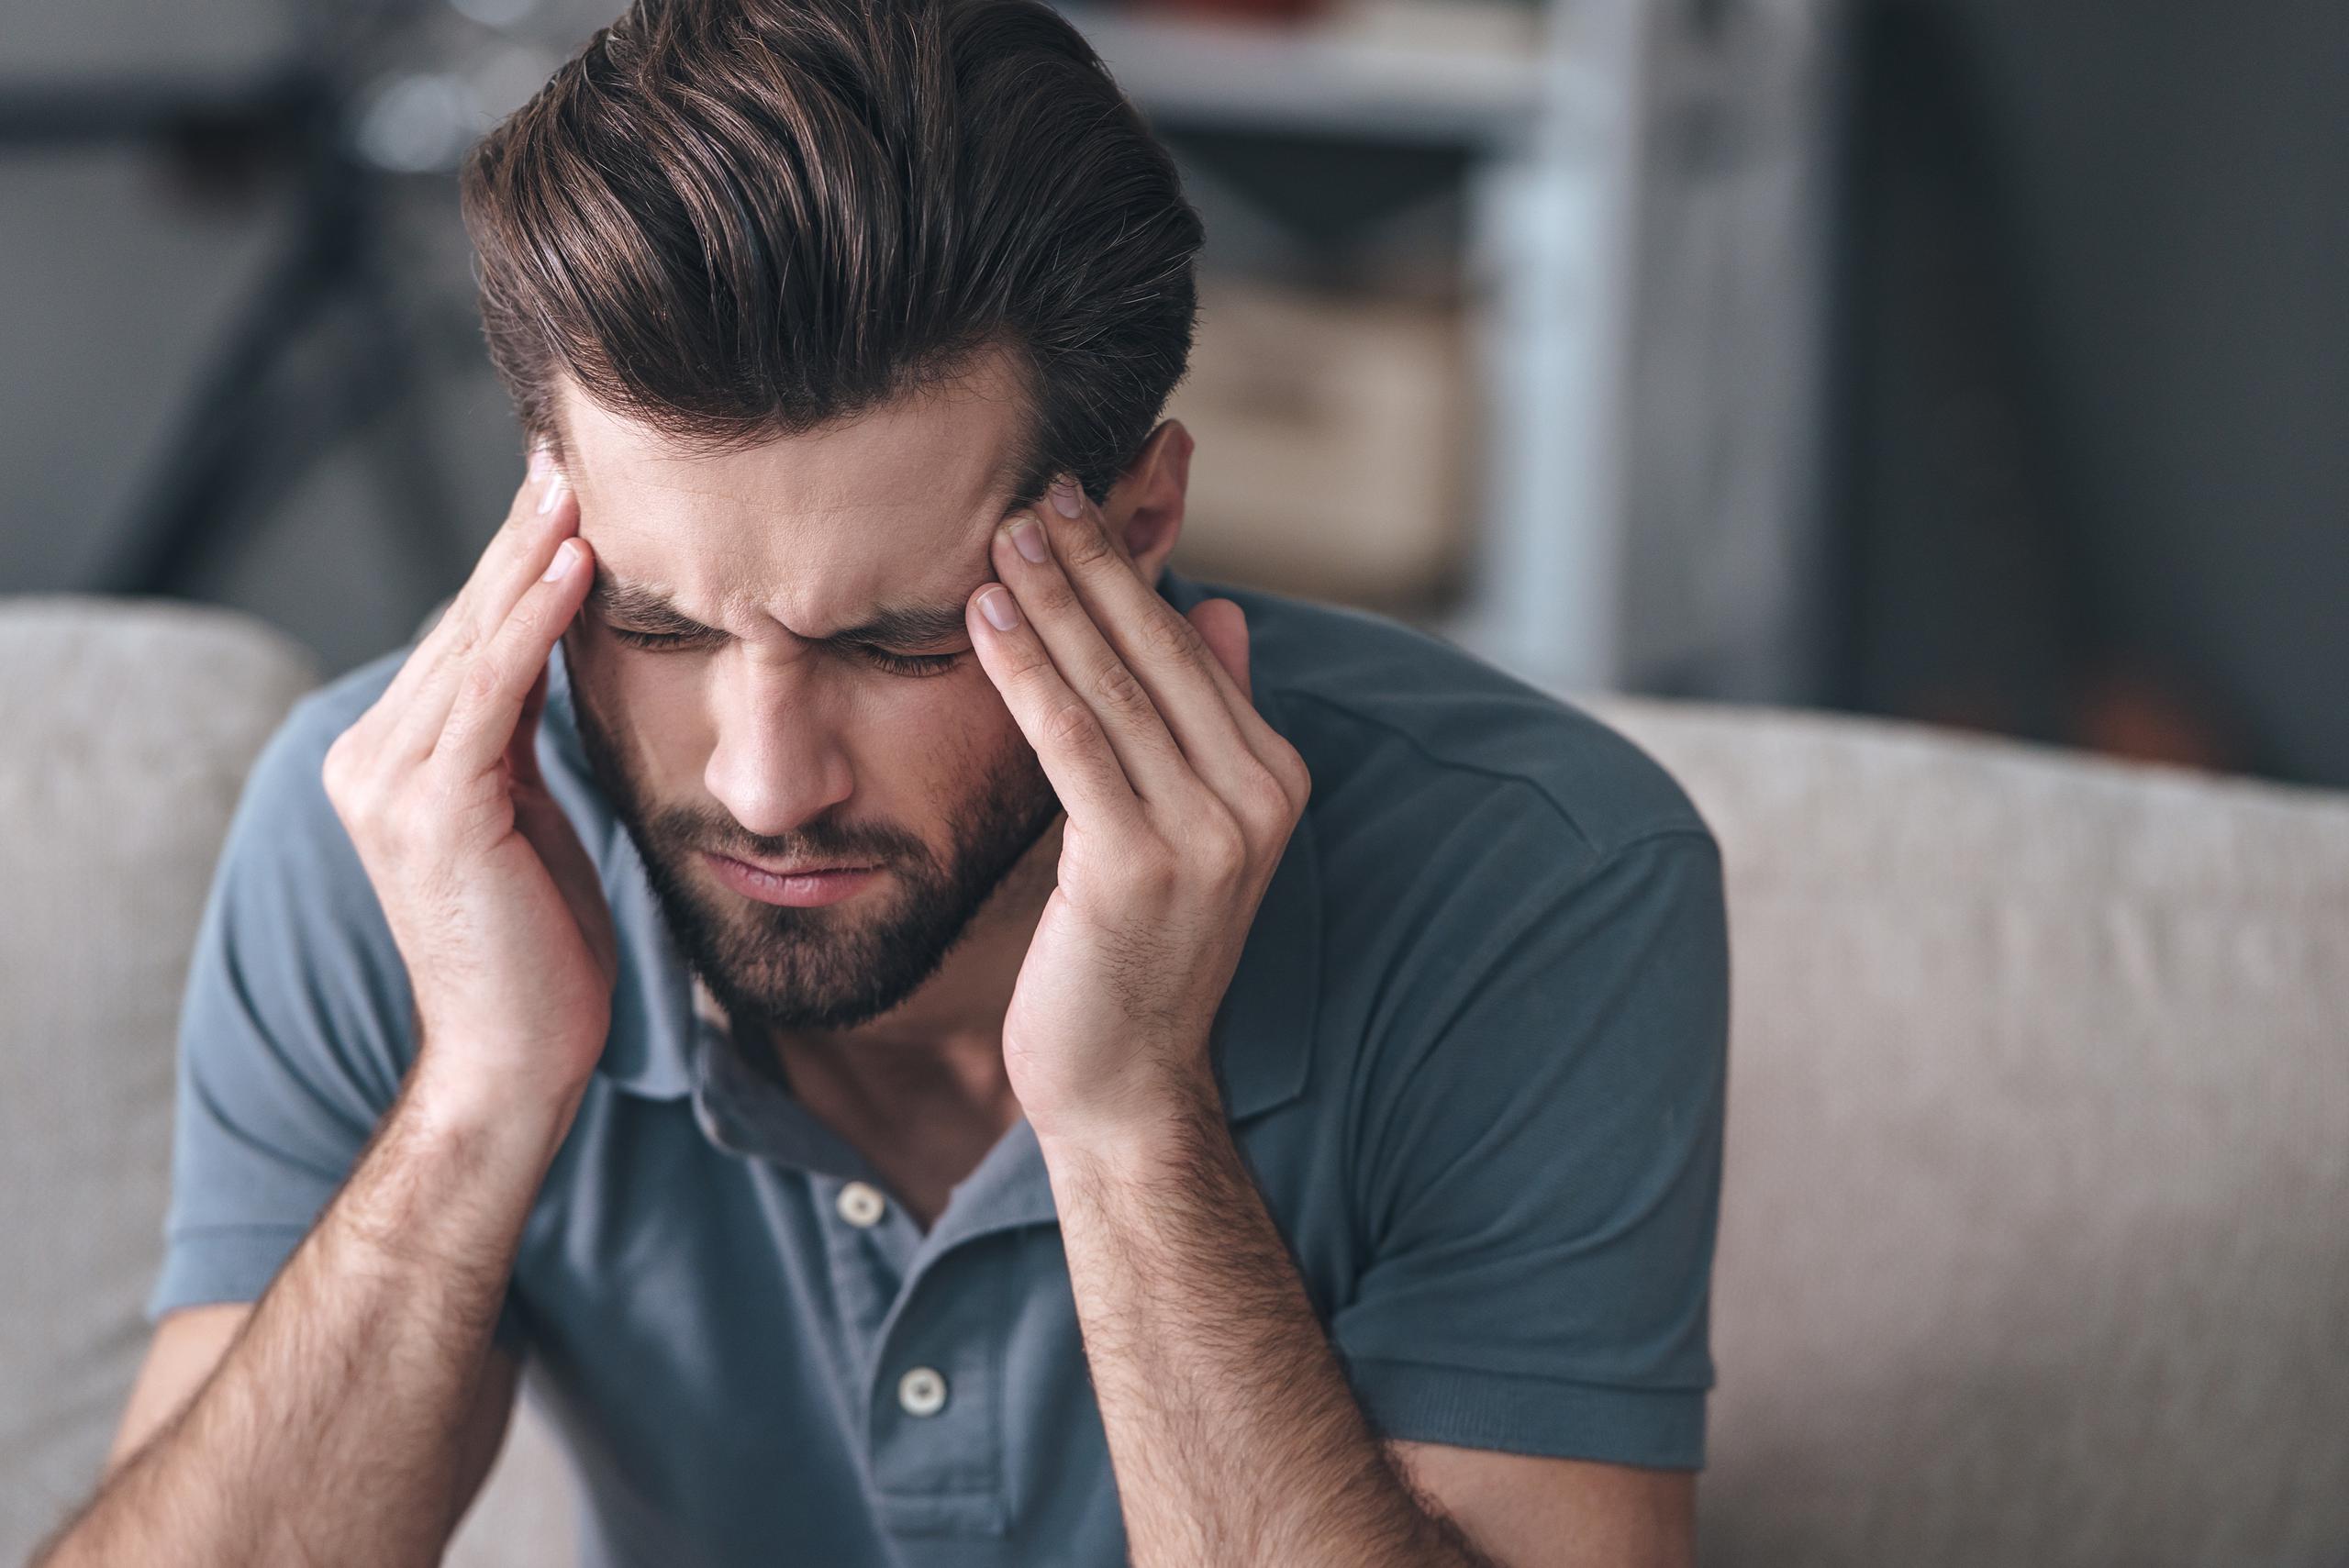 Tener dolor de cabeza constante por más de tres días es una señal de alarma.